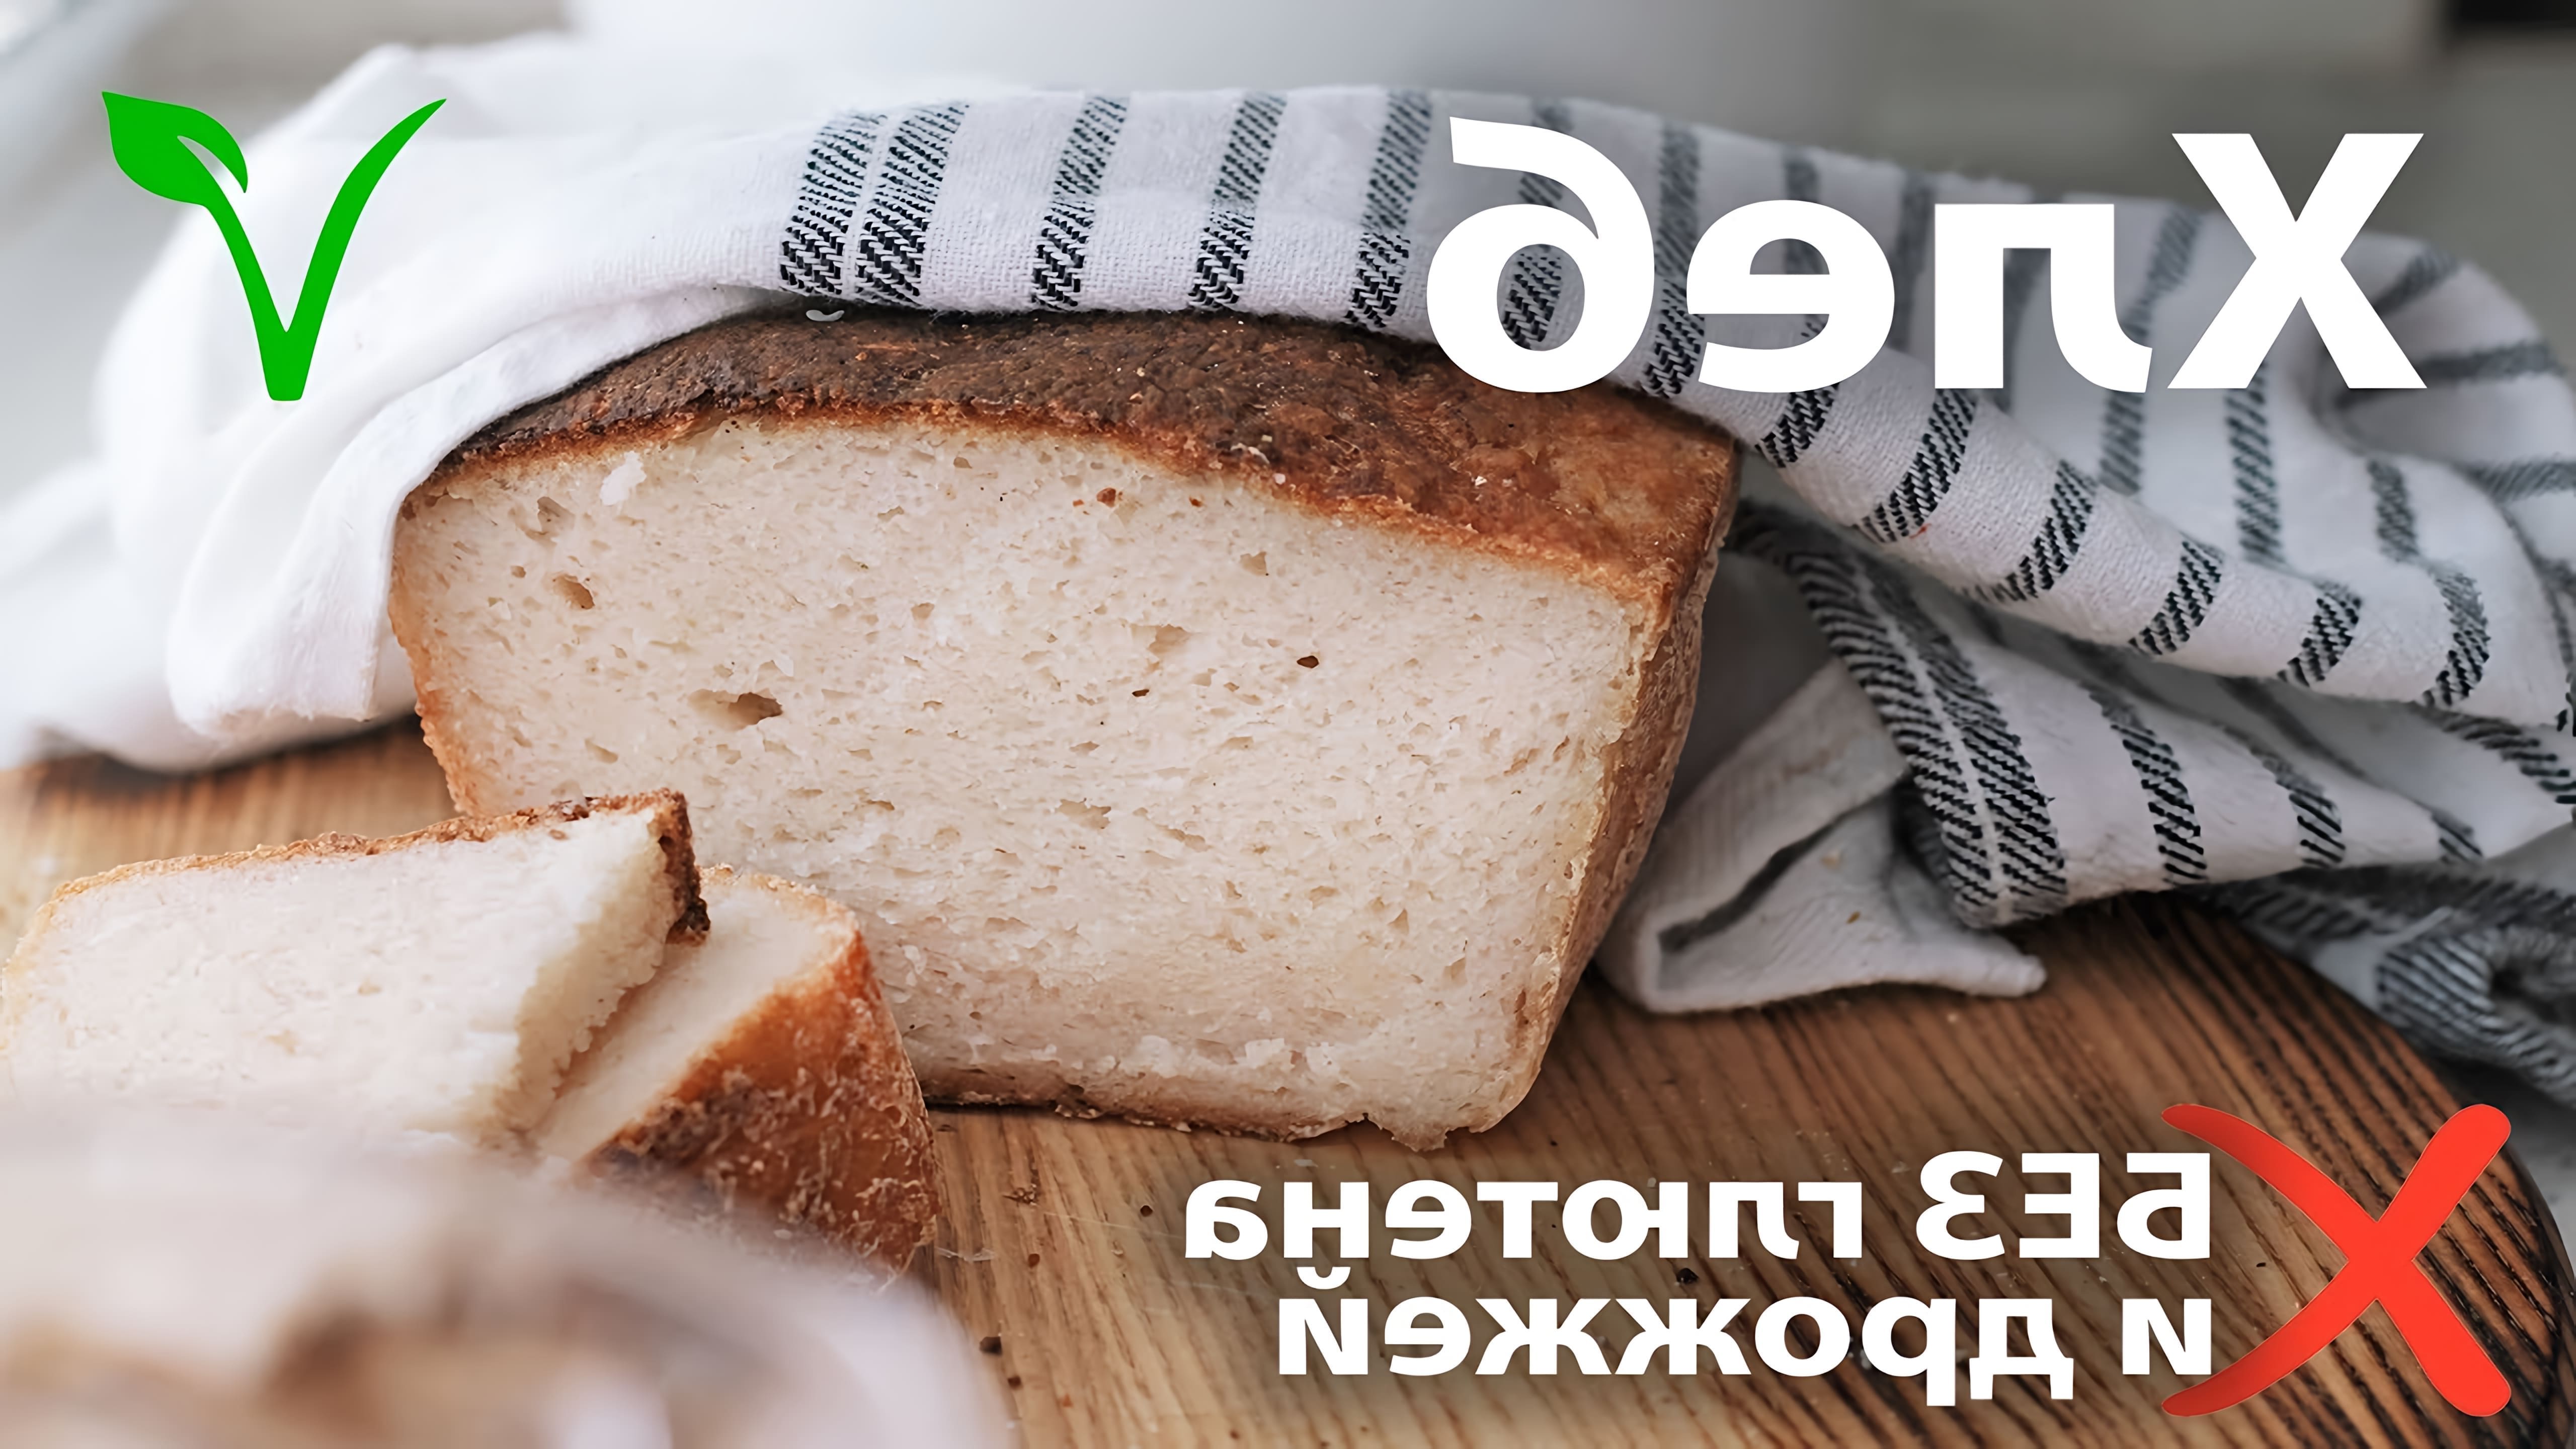 В этом видео показано, как приготовить белый хлеб без глютена и дрожжей